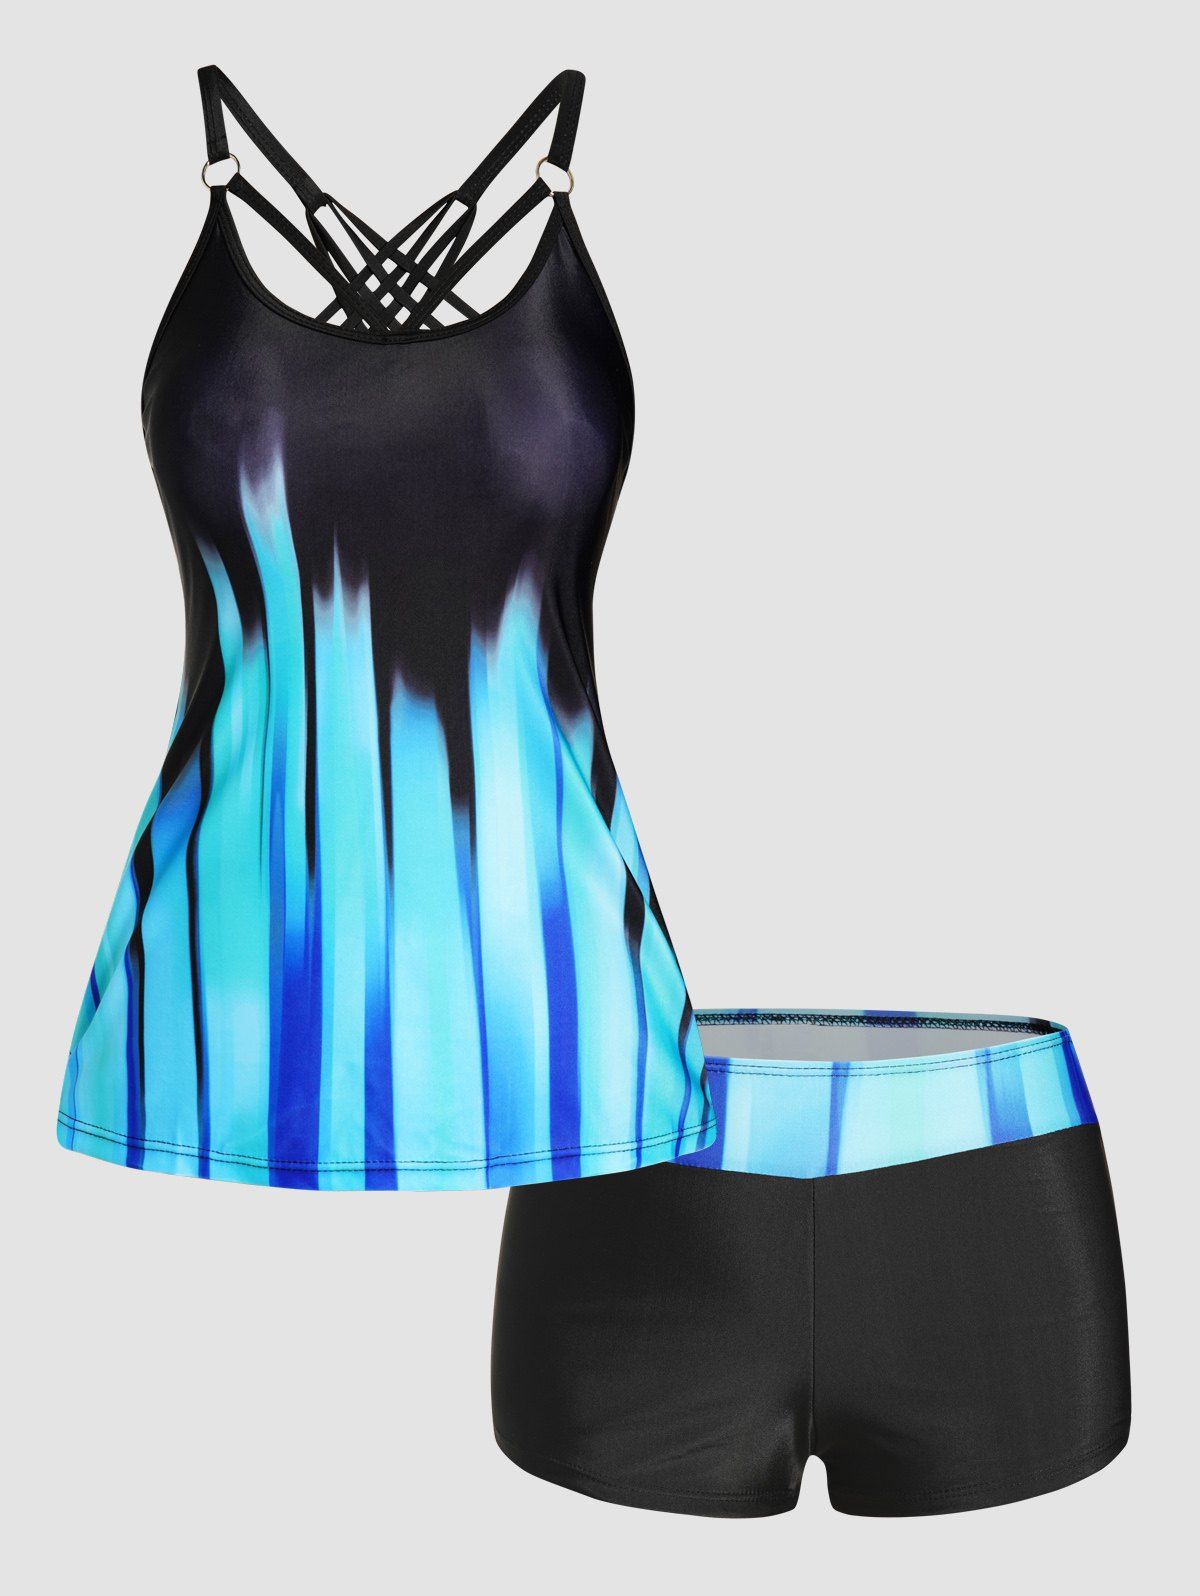 Ombre Stripe Print Tankini Swimsuit Crisscross Padded Tankini Two Piece Swimwear Boyleg Bathing Suit - BLUE S